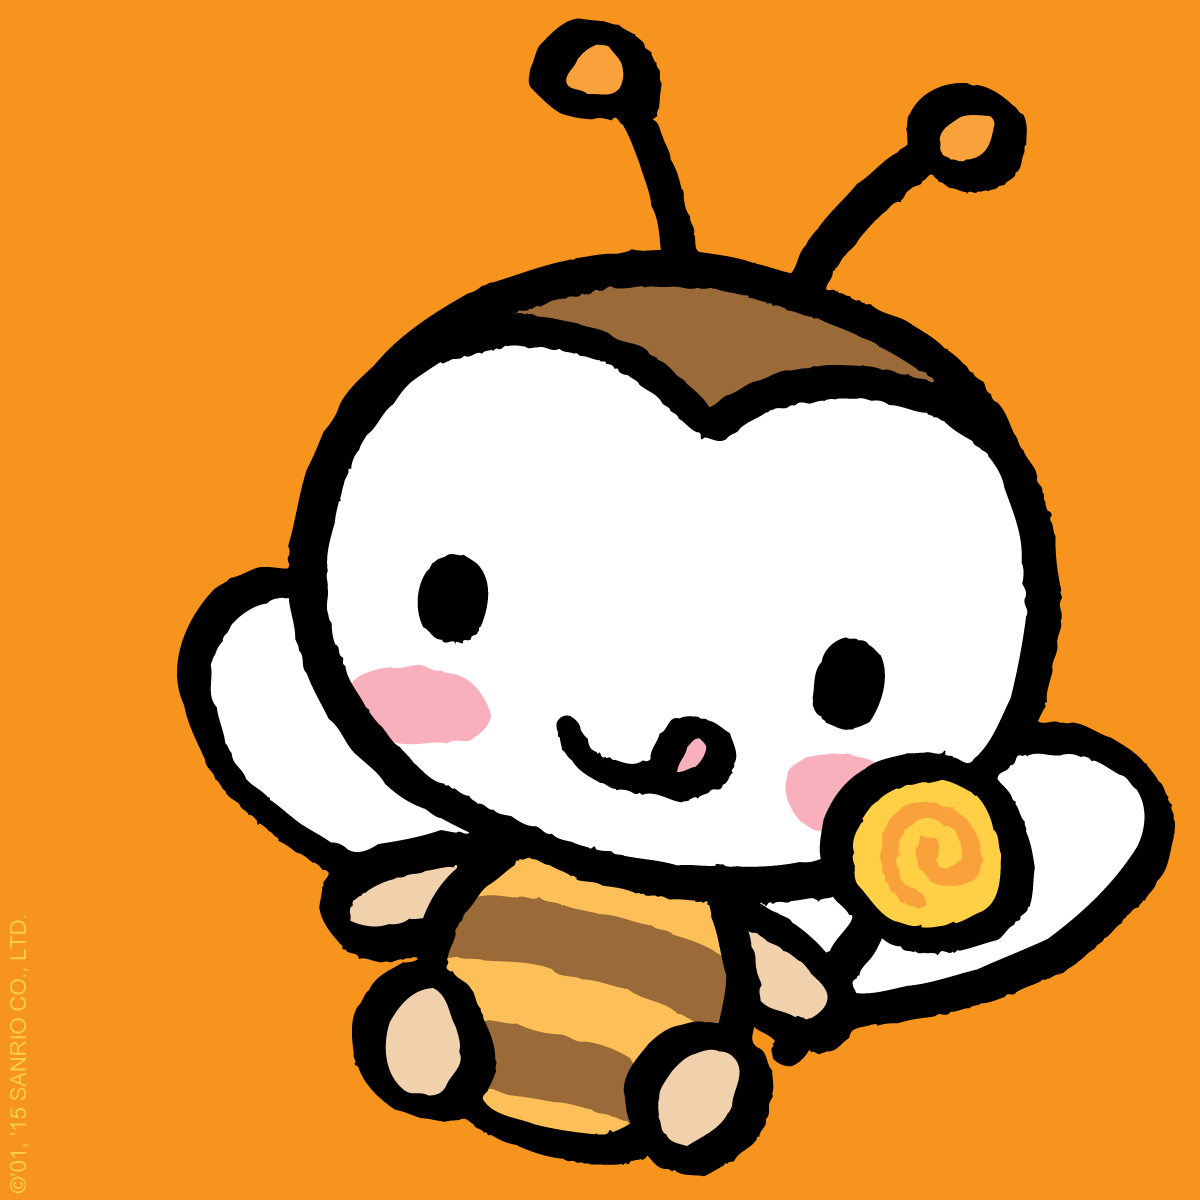 9sweet kitty9. Sweet Coron hello Kitty. Пчелка из Хэллоу Китти. Sanrio рыба. Пчела из Хелло Китти.